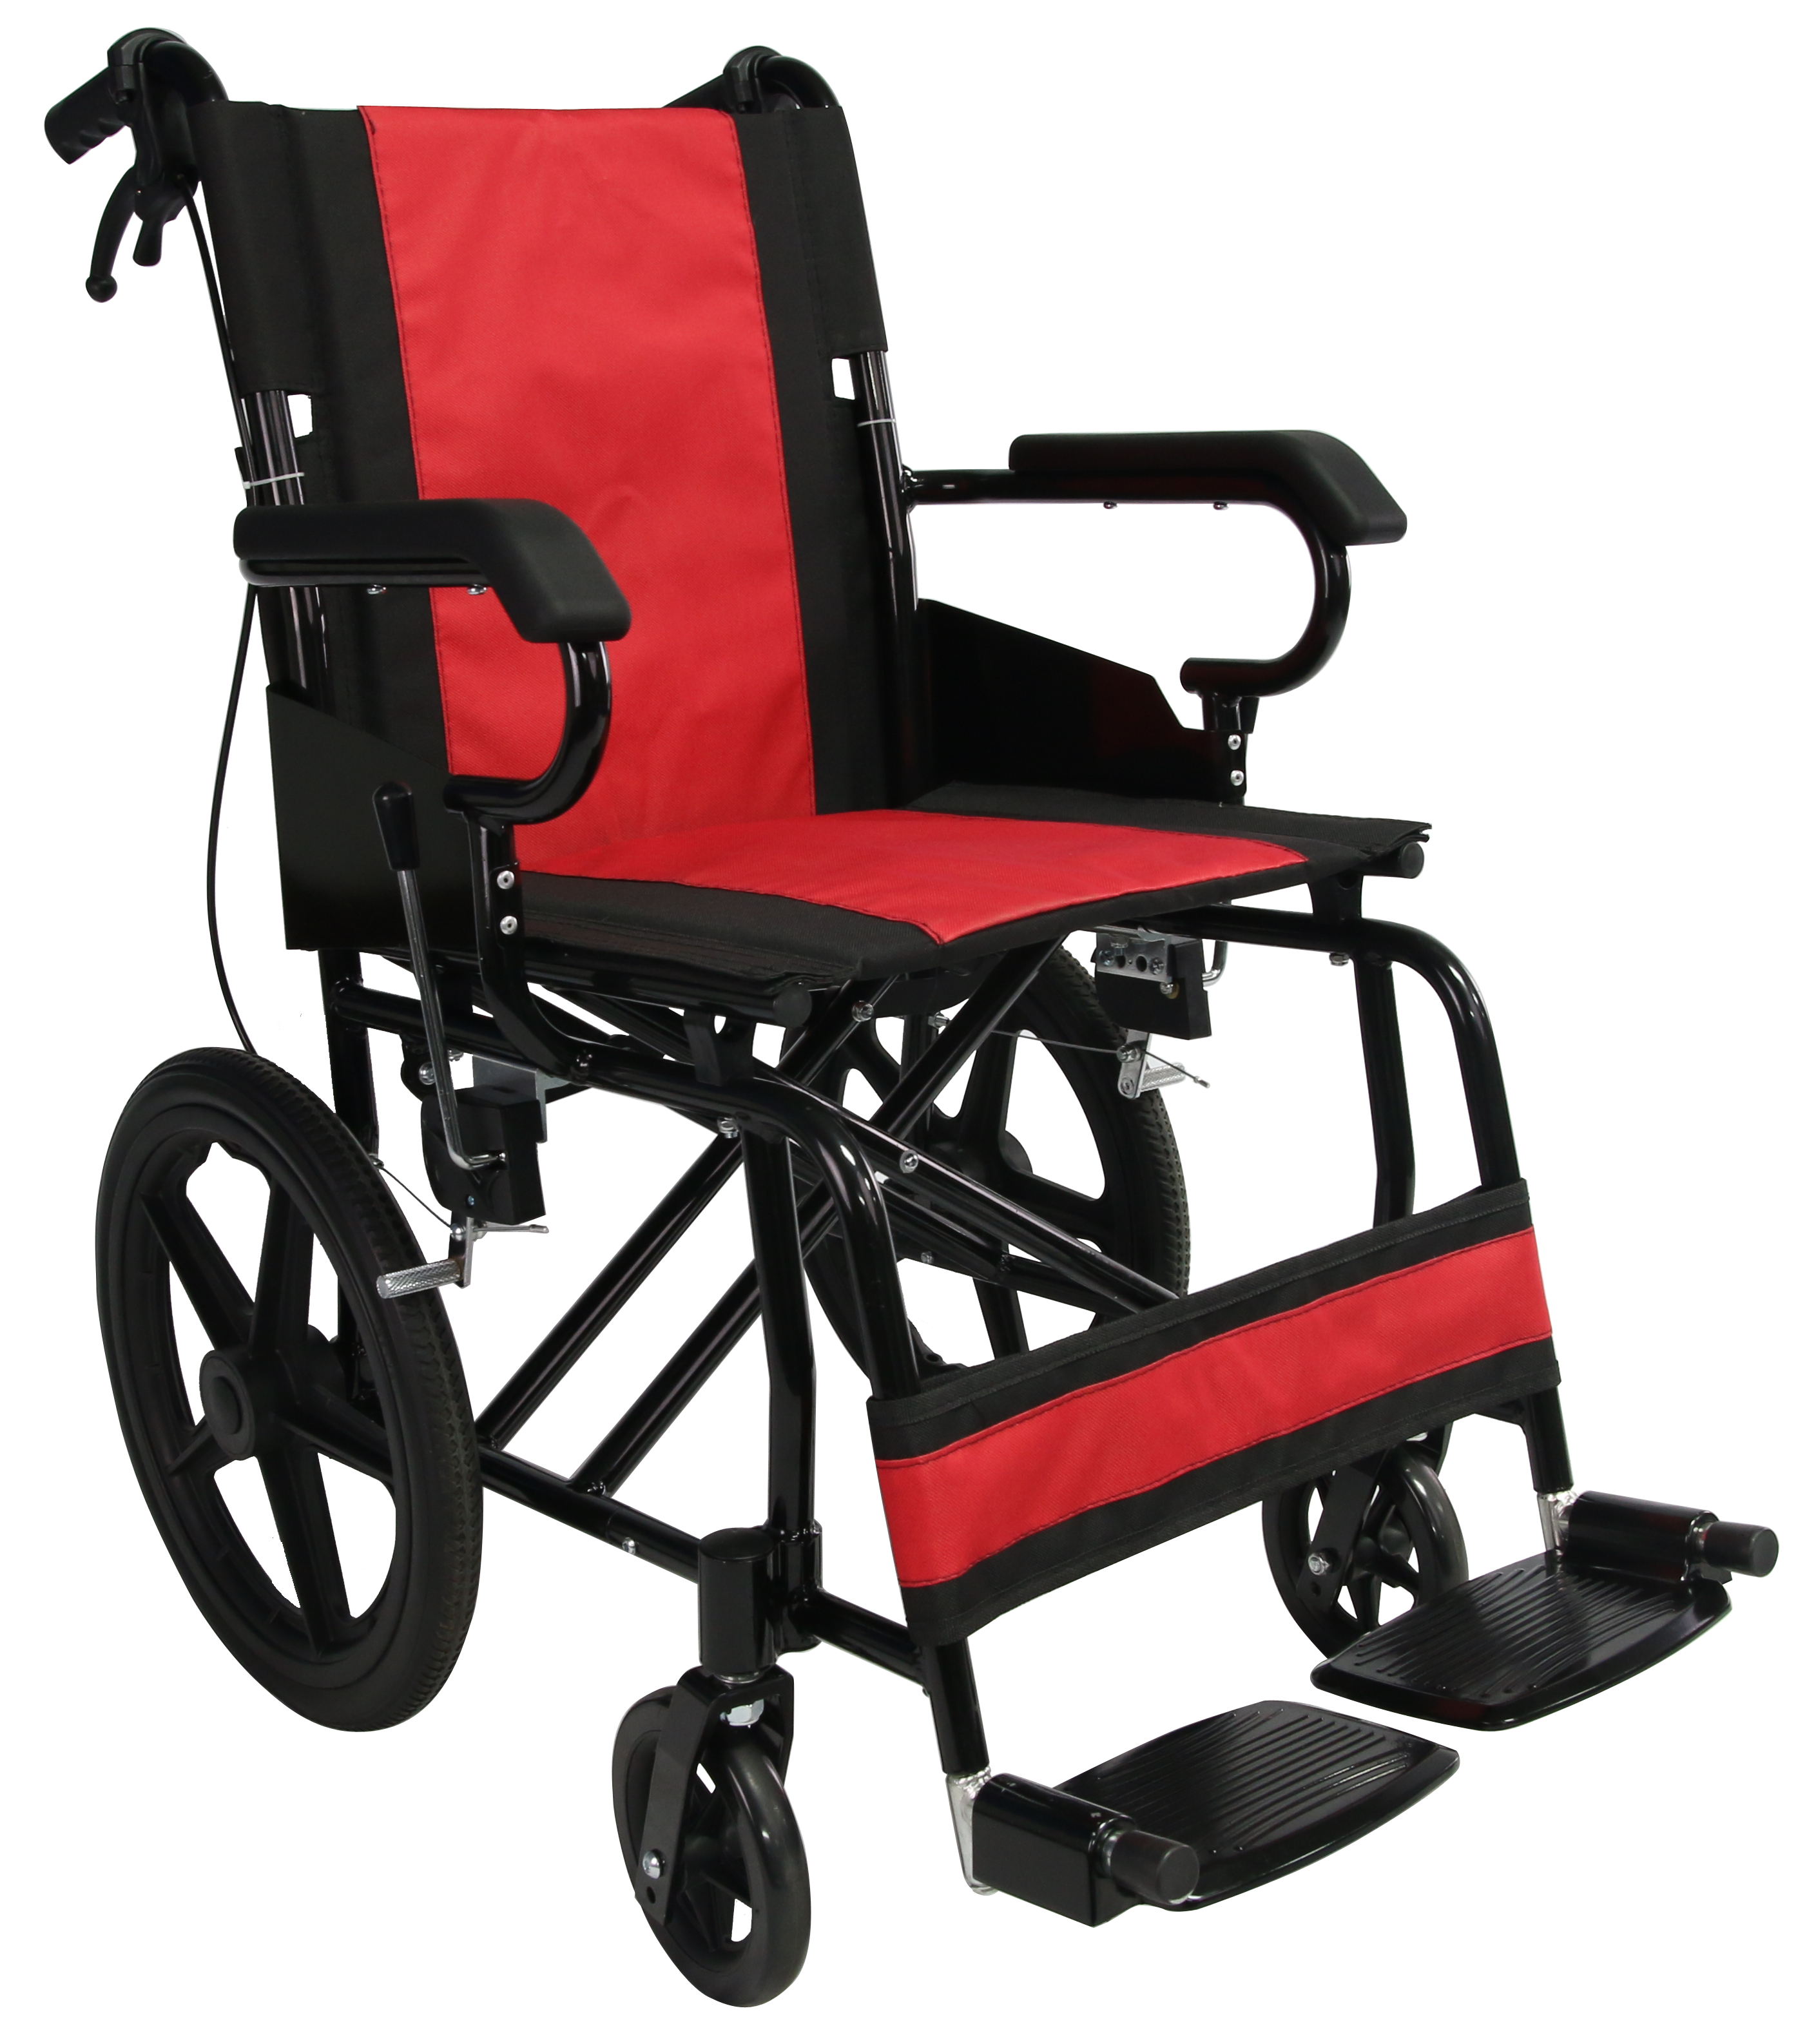 شراء كرسي متحرك من الألومنيوم قابل للطي ,كرسي متحرك من الألومنيوم قابل للطي الأسعار ·كرسي متحرك من الألومنيوم قابل للطي العلامات التجارية ,كرسي متحرك من الألومنيوم قابل للطي الصانع ,كرسي متحرك من الألومنيوم قابل للطي اقتباس ·كرسي متحرك من الألومنيوم قابل للطي الشركة